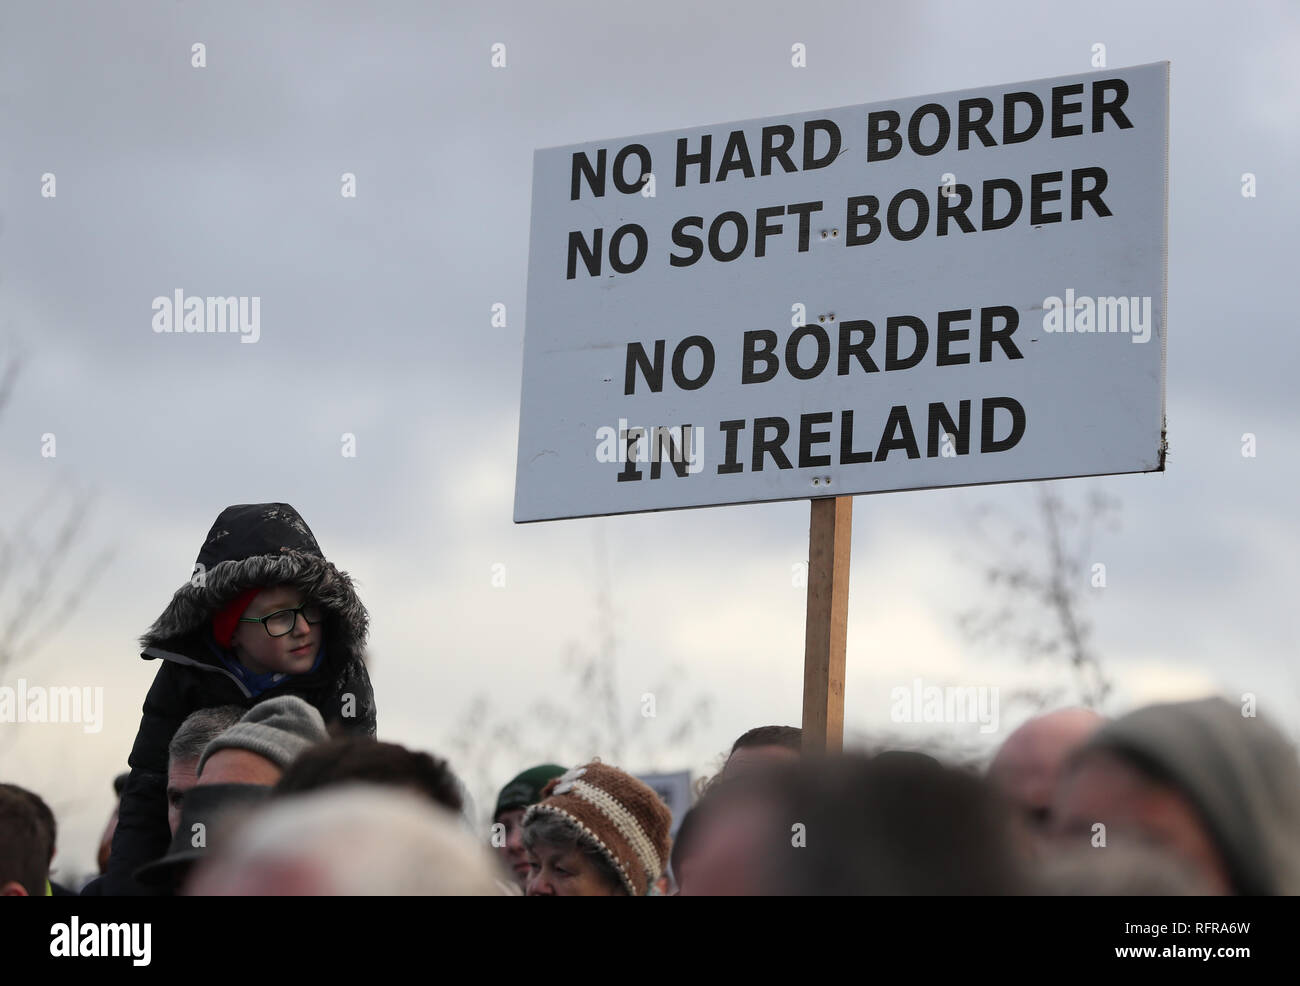 Le persone prendono parte ad un anti-Brexit al rally di frontiera irlandese vicino Carrickcarnan, Co Louth, esprimendo la loro opposizione alla istituzione di un disco confine tra la Repubblica di Irlanda e Irlanda del Nord. Foto Stock